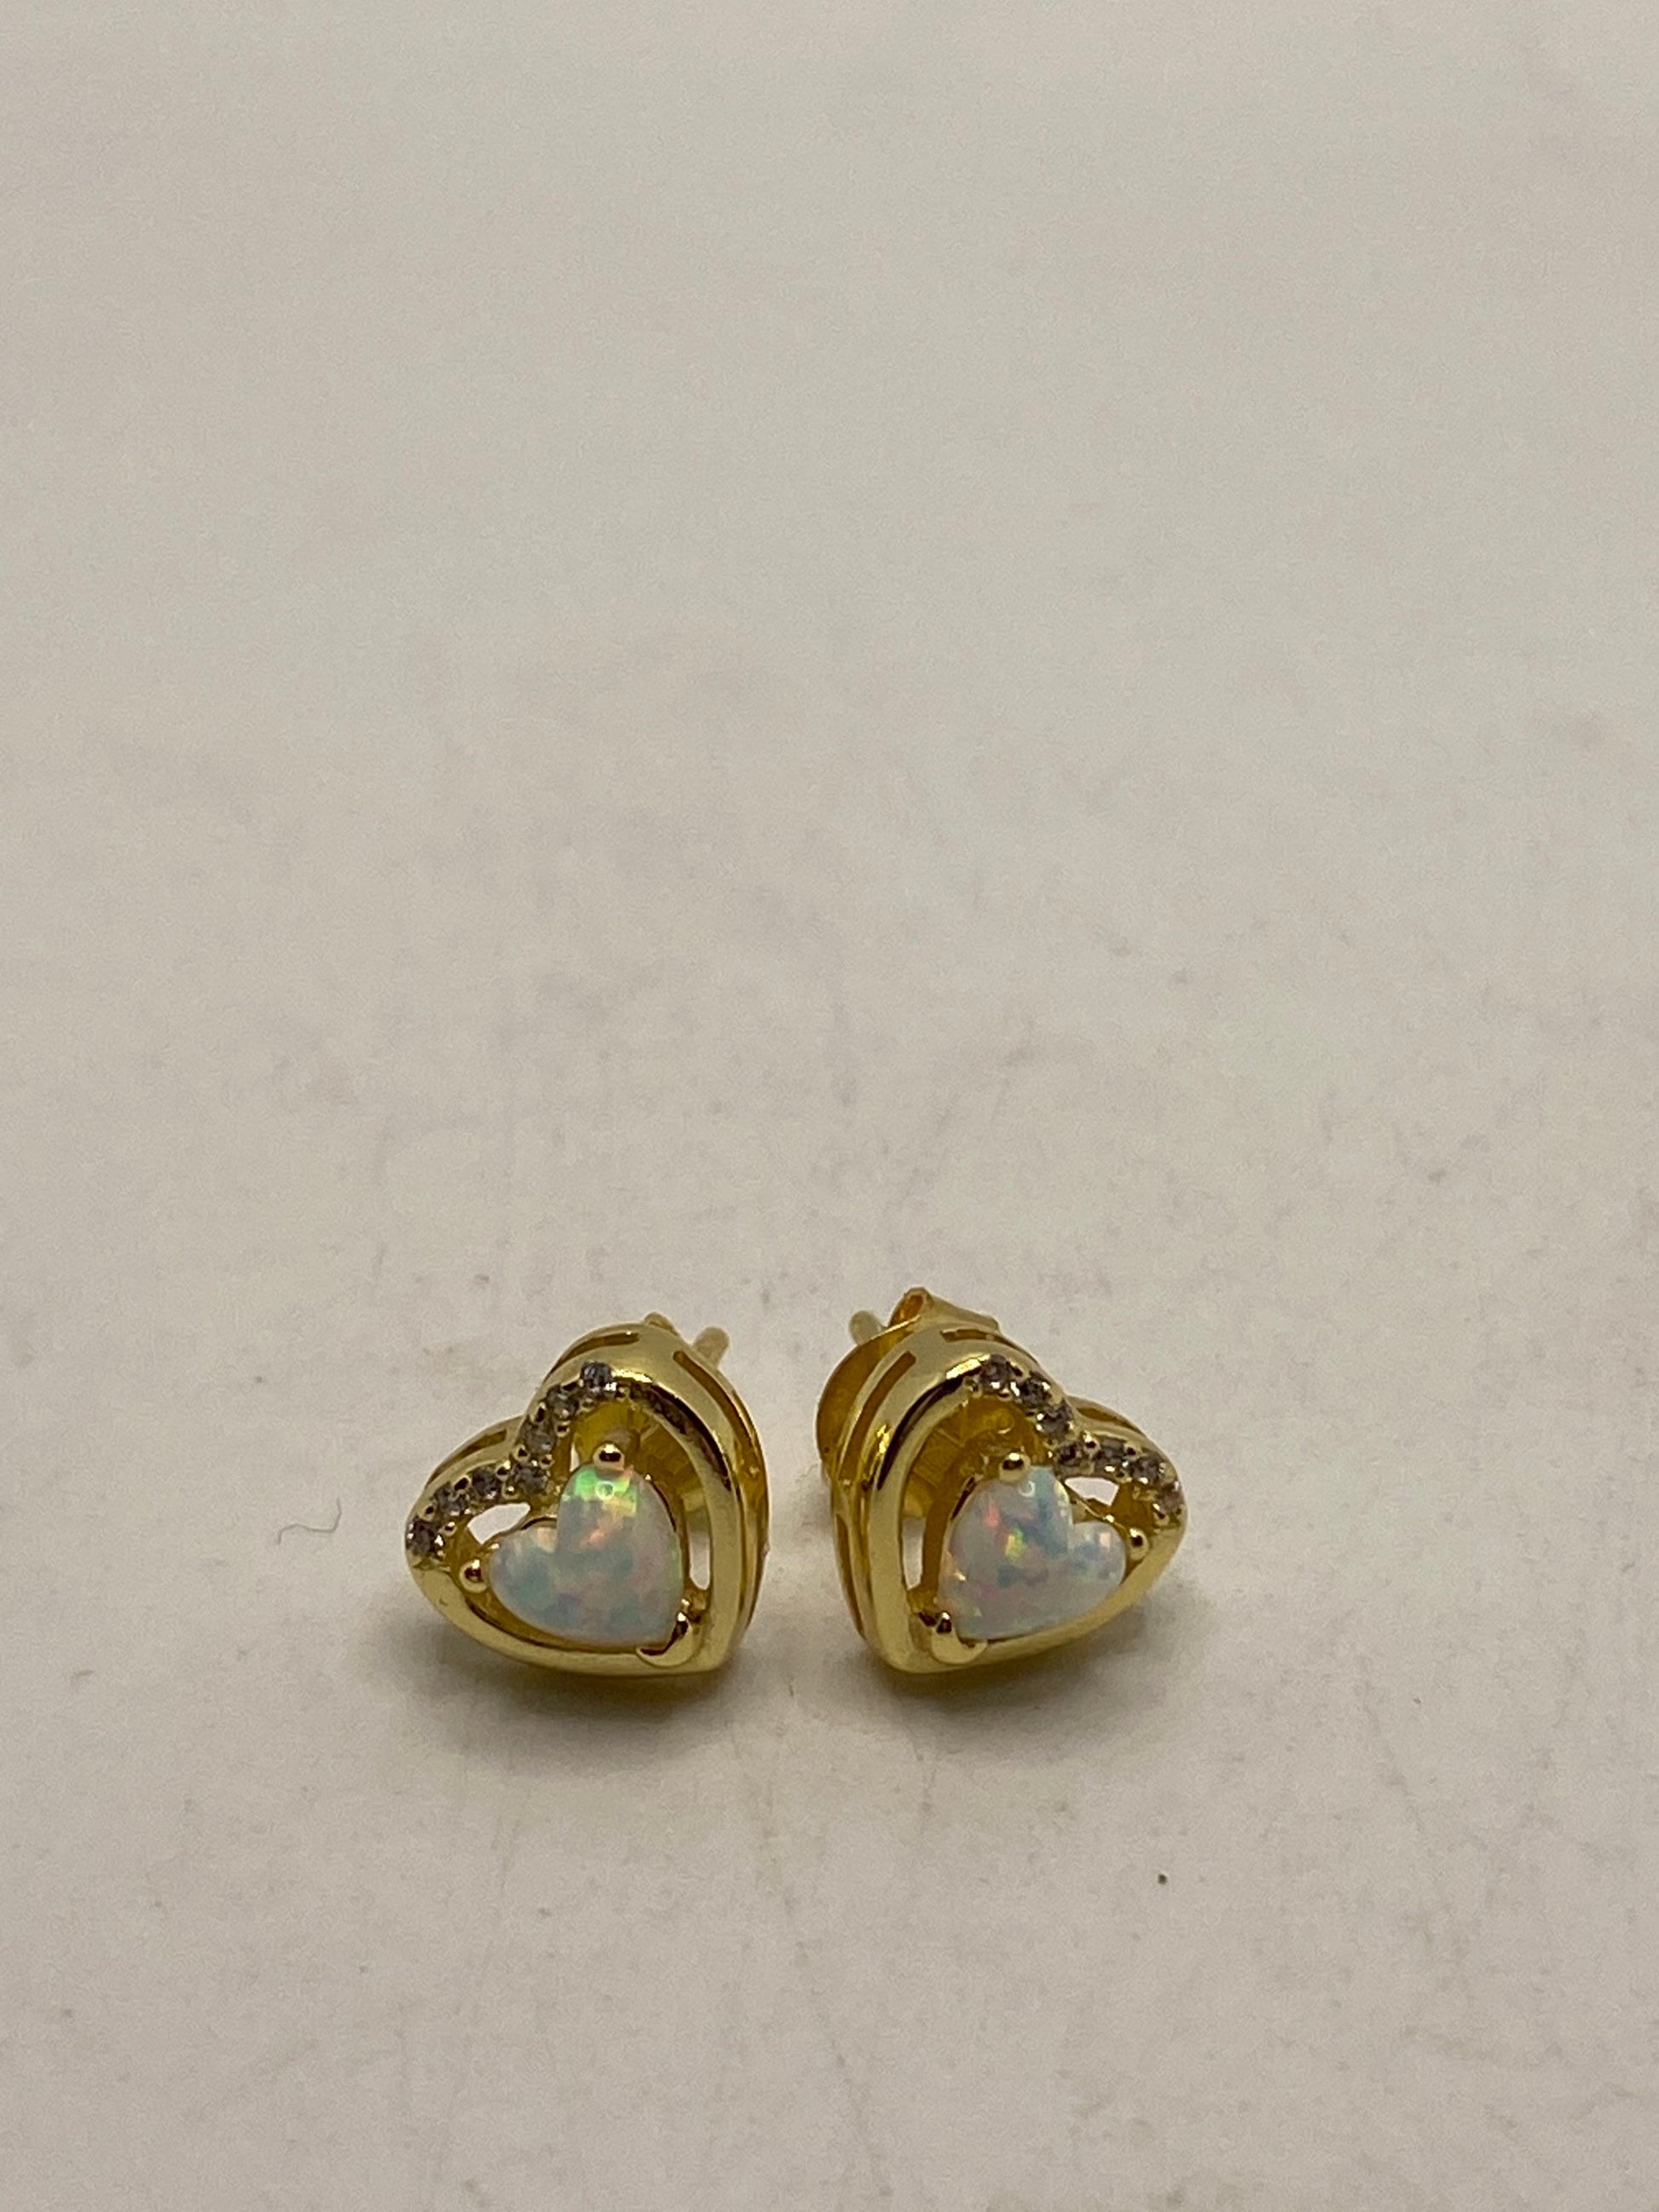 Vintage White Opal Heart Earrings Golden 925 Sterling Silver Stud Button